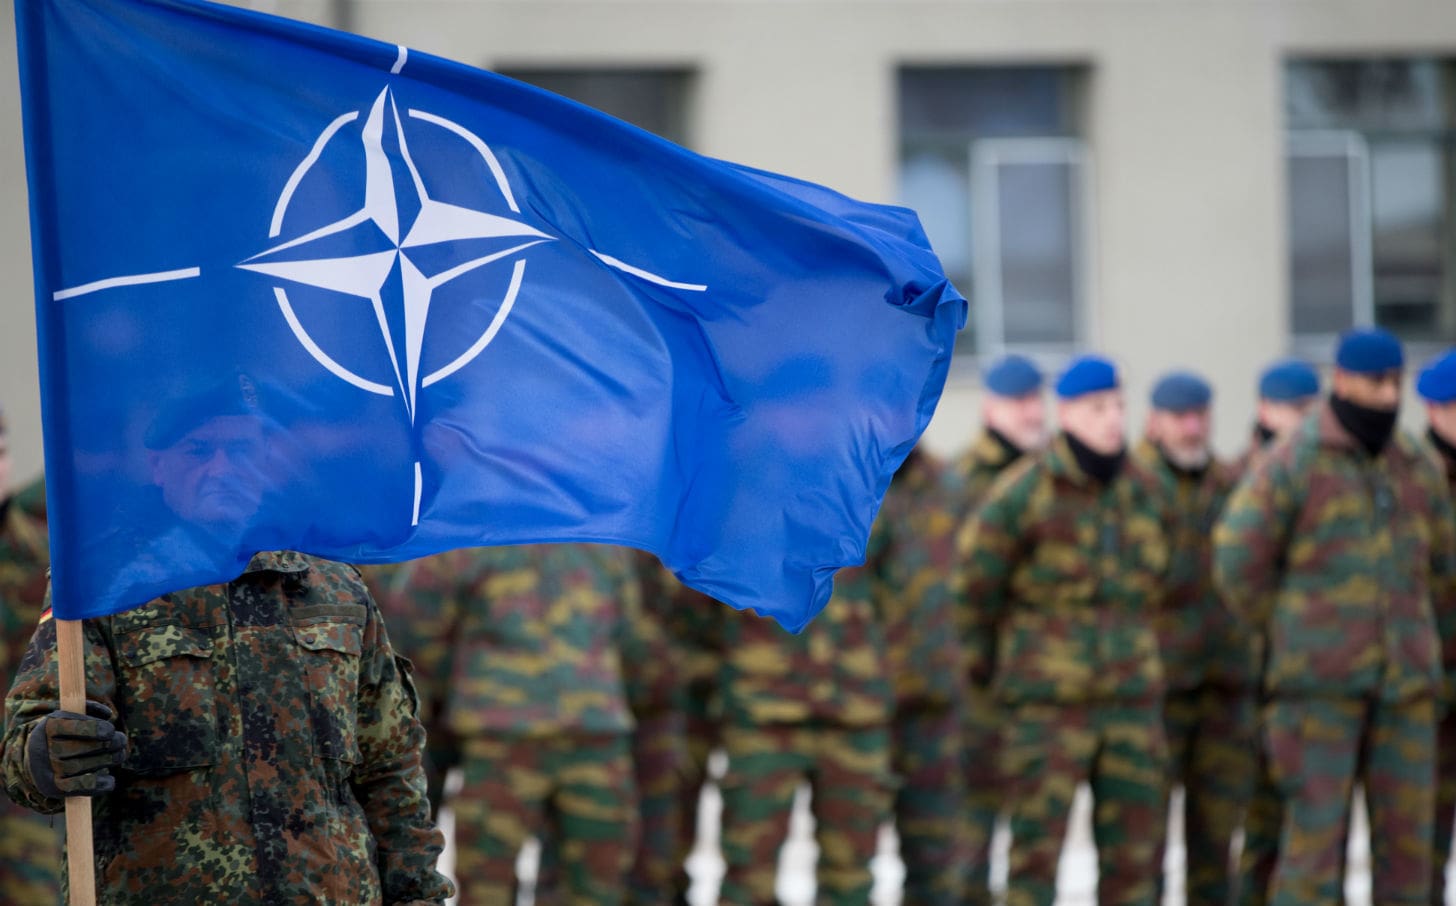 Spese militari al 2% del Pil, la Nato lo imporrà come requisito minimo, mentre Putin avverte: “siamo in guerra calda”